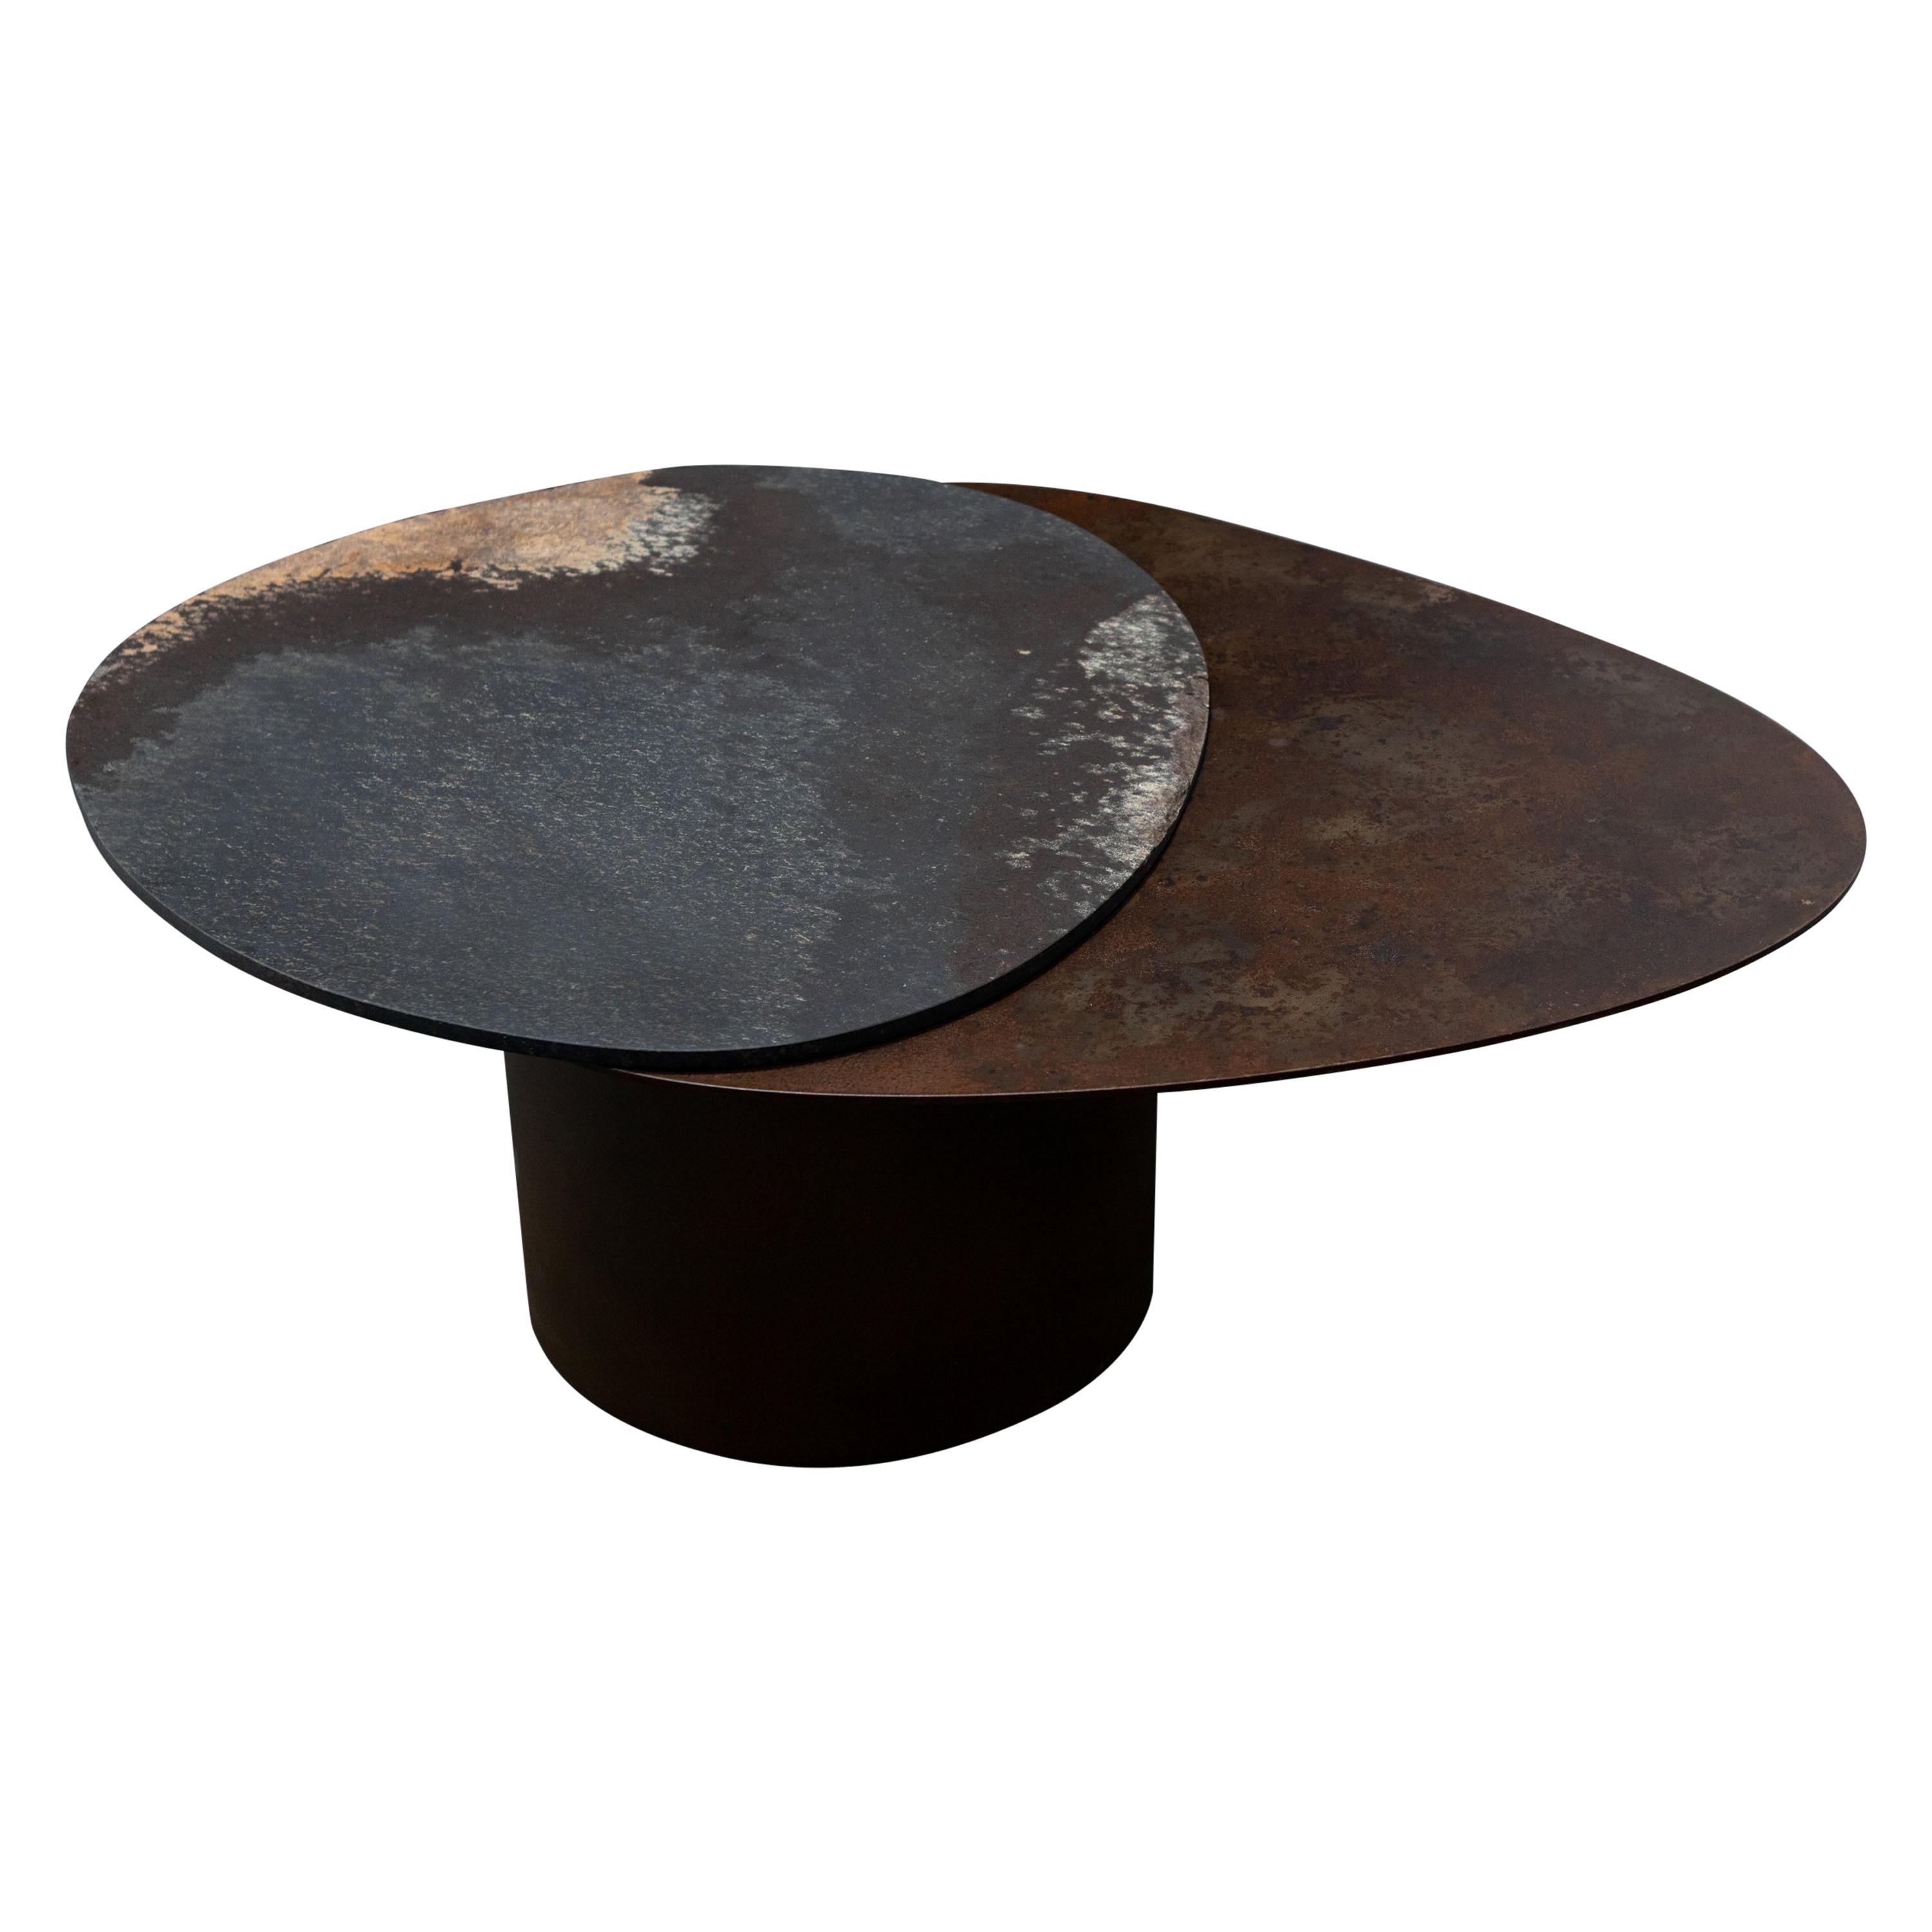 Einzigartiger Kon Pac Low Table, Daté Kan Stone Sculptural Design von Okurayama